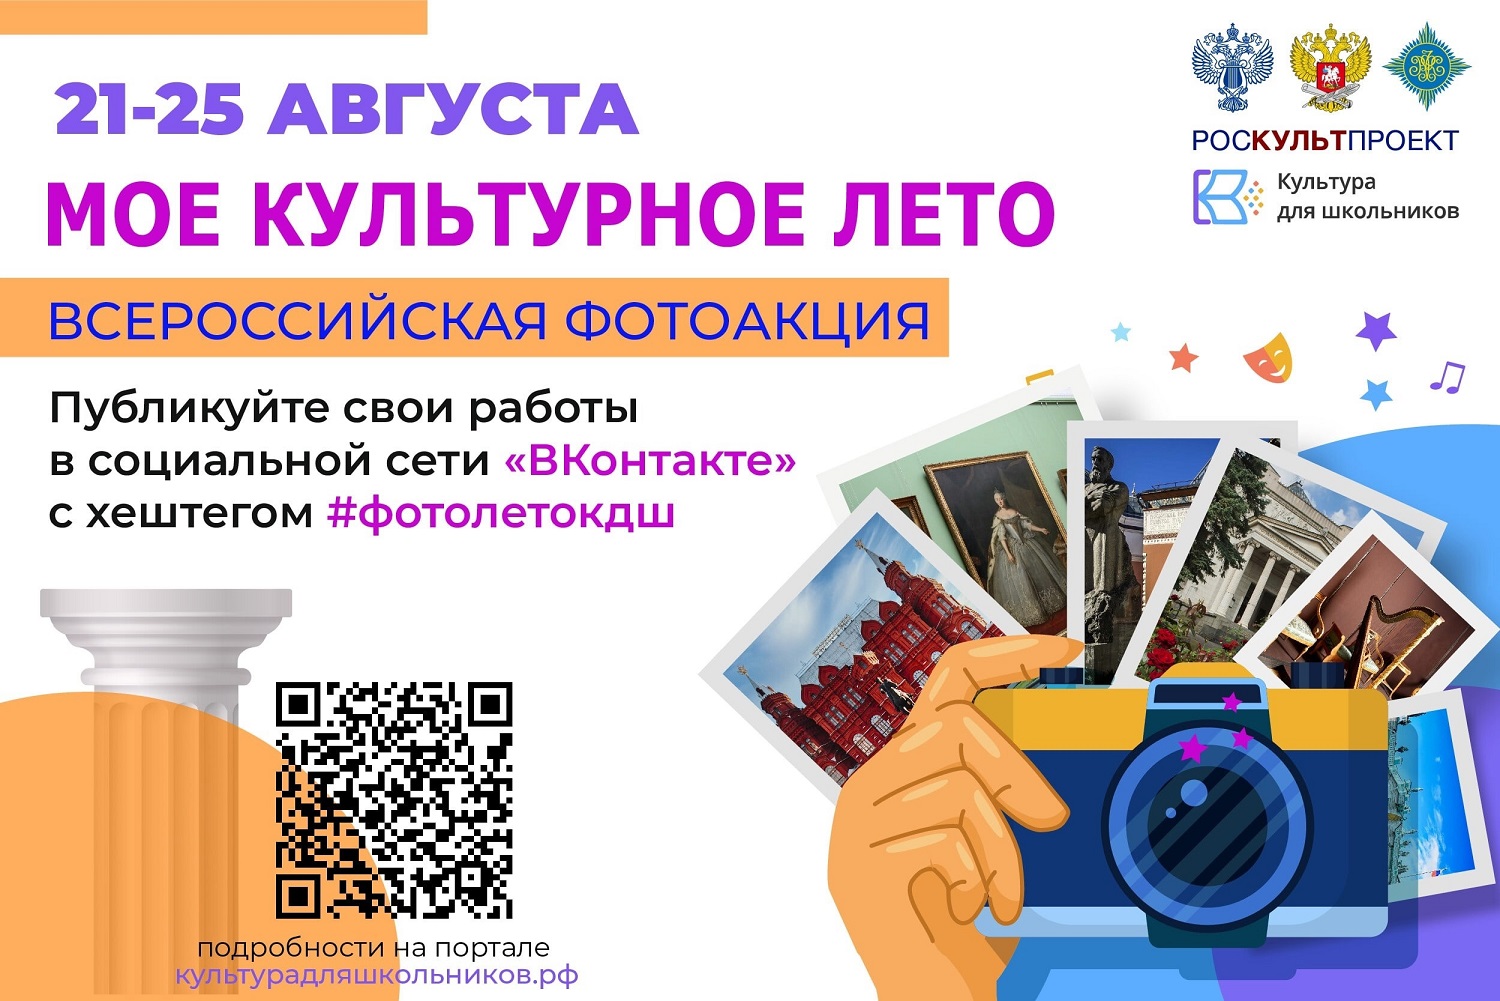 «Мое культурное лето» - конкурс фотографии для школьников России